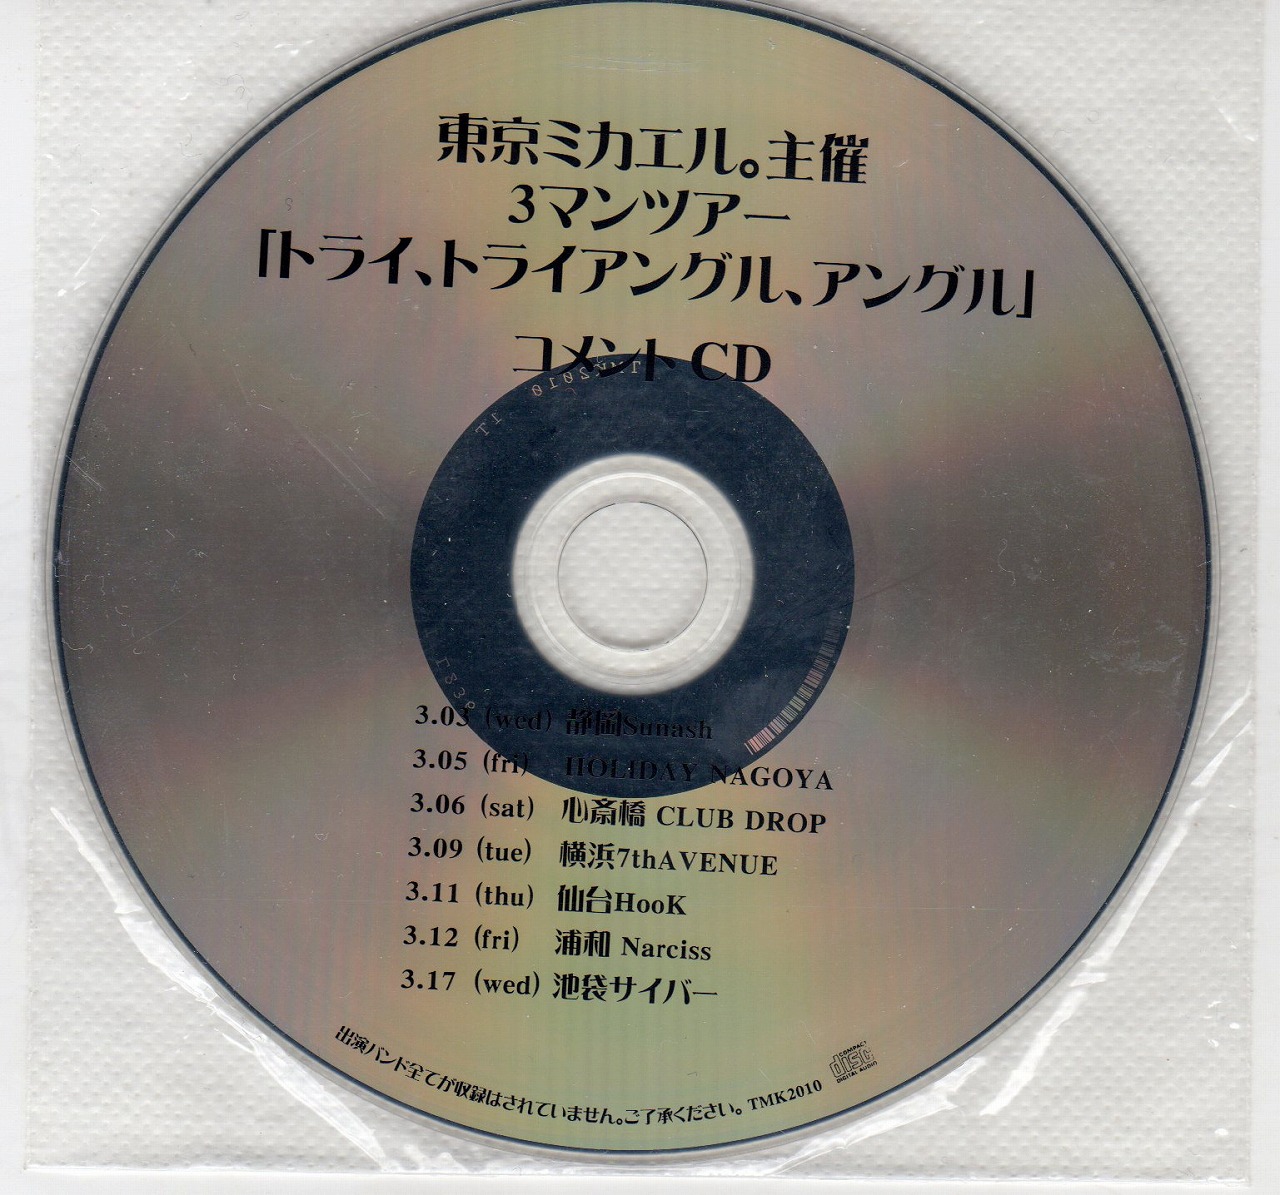 東京ミカエル。 ( トウキョウミカエル )  の CD 東京ミカエル。主催3マンツアー「トライ、トライアングル、アングル」コメントCD